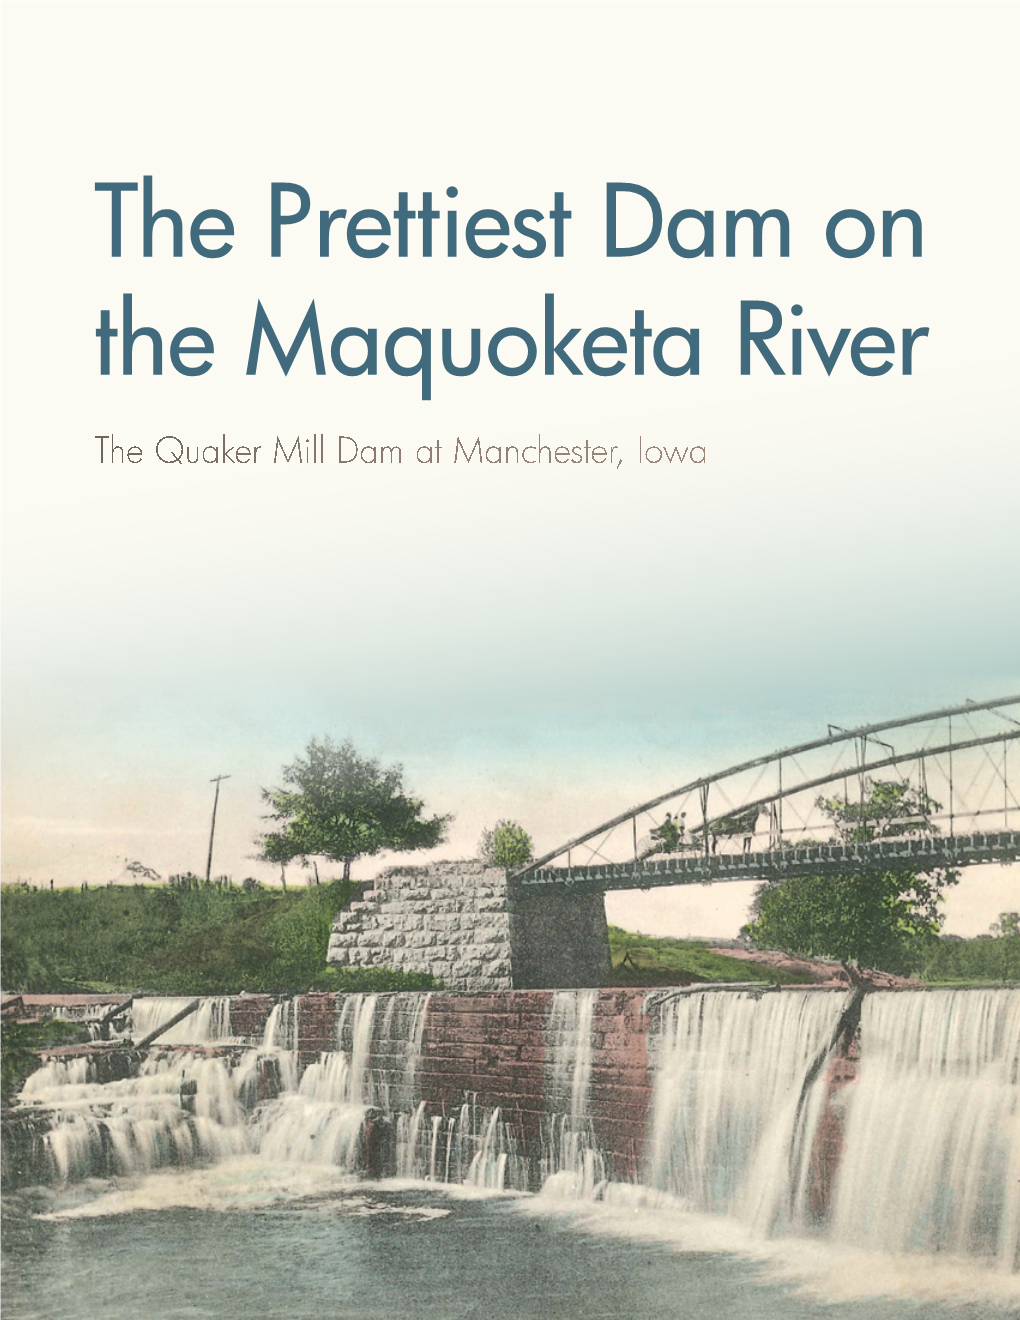 The Prettiest Dam on the Maquoketa River